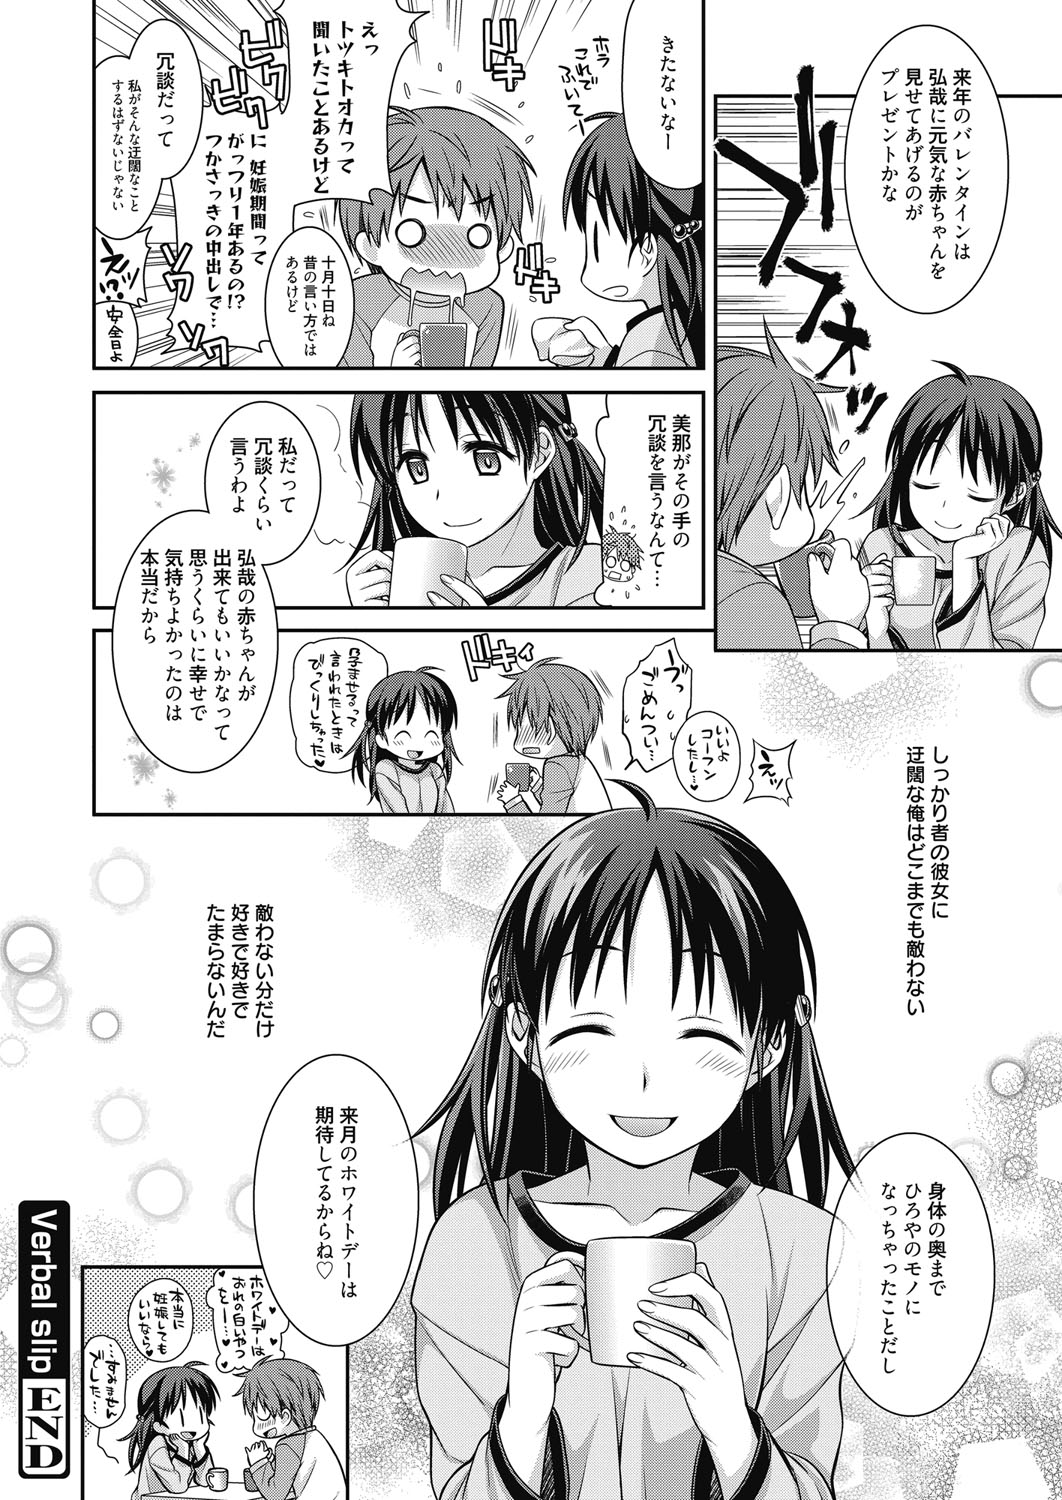 Web Manga Bangaichi Vol. 6 web 漫画ばんがいち Vol.6